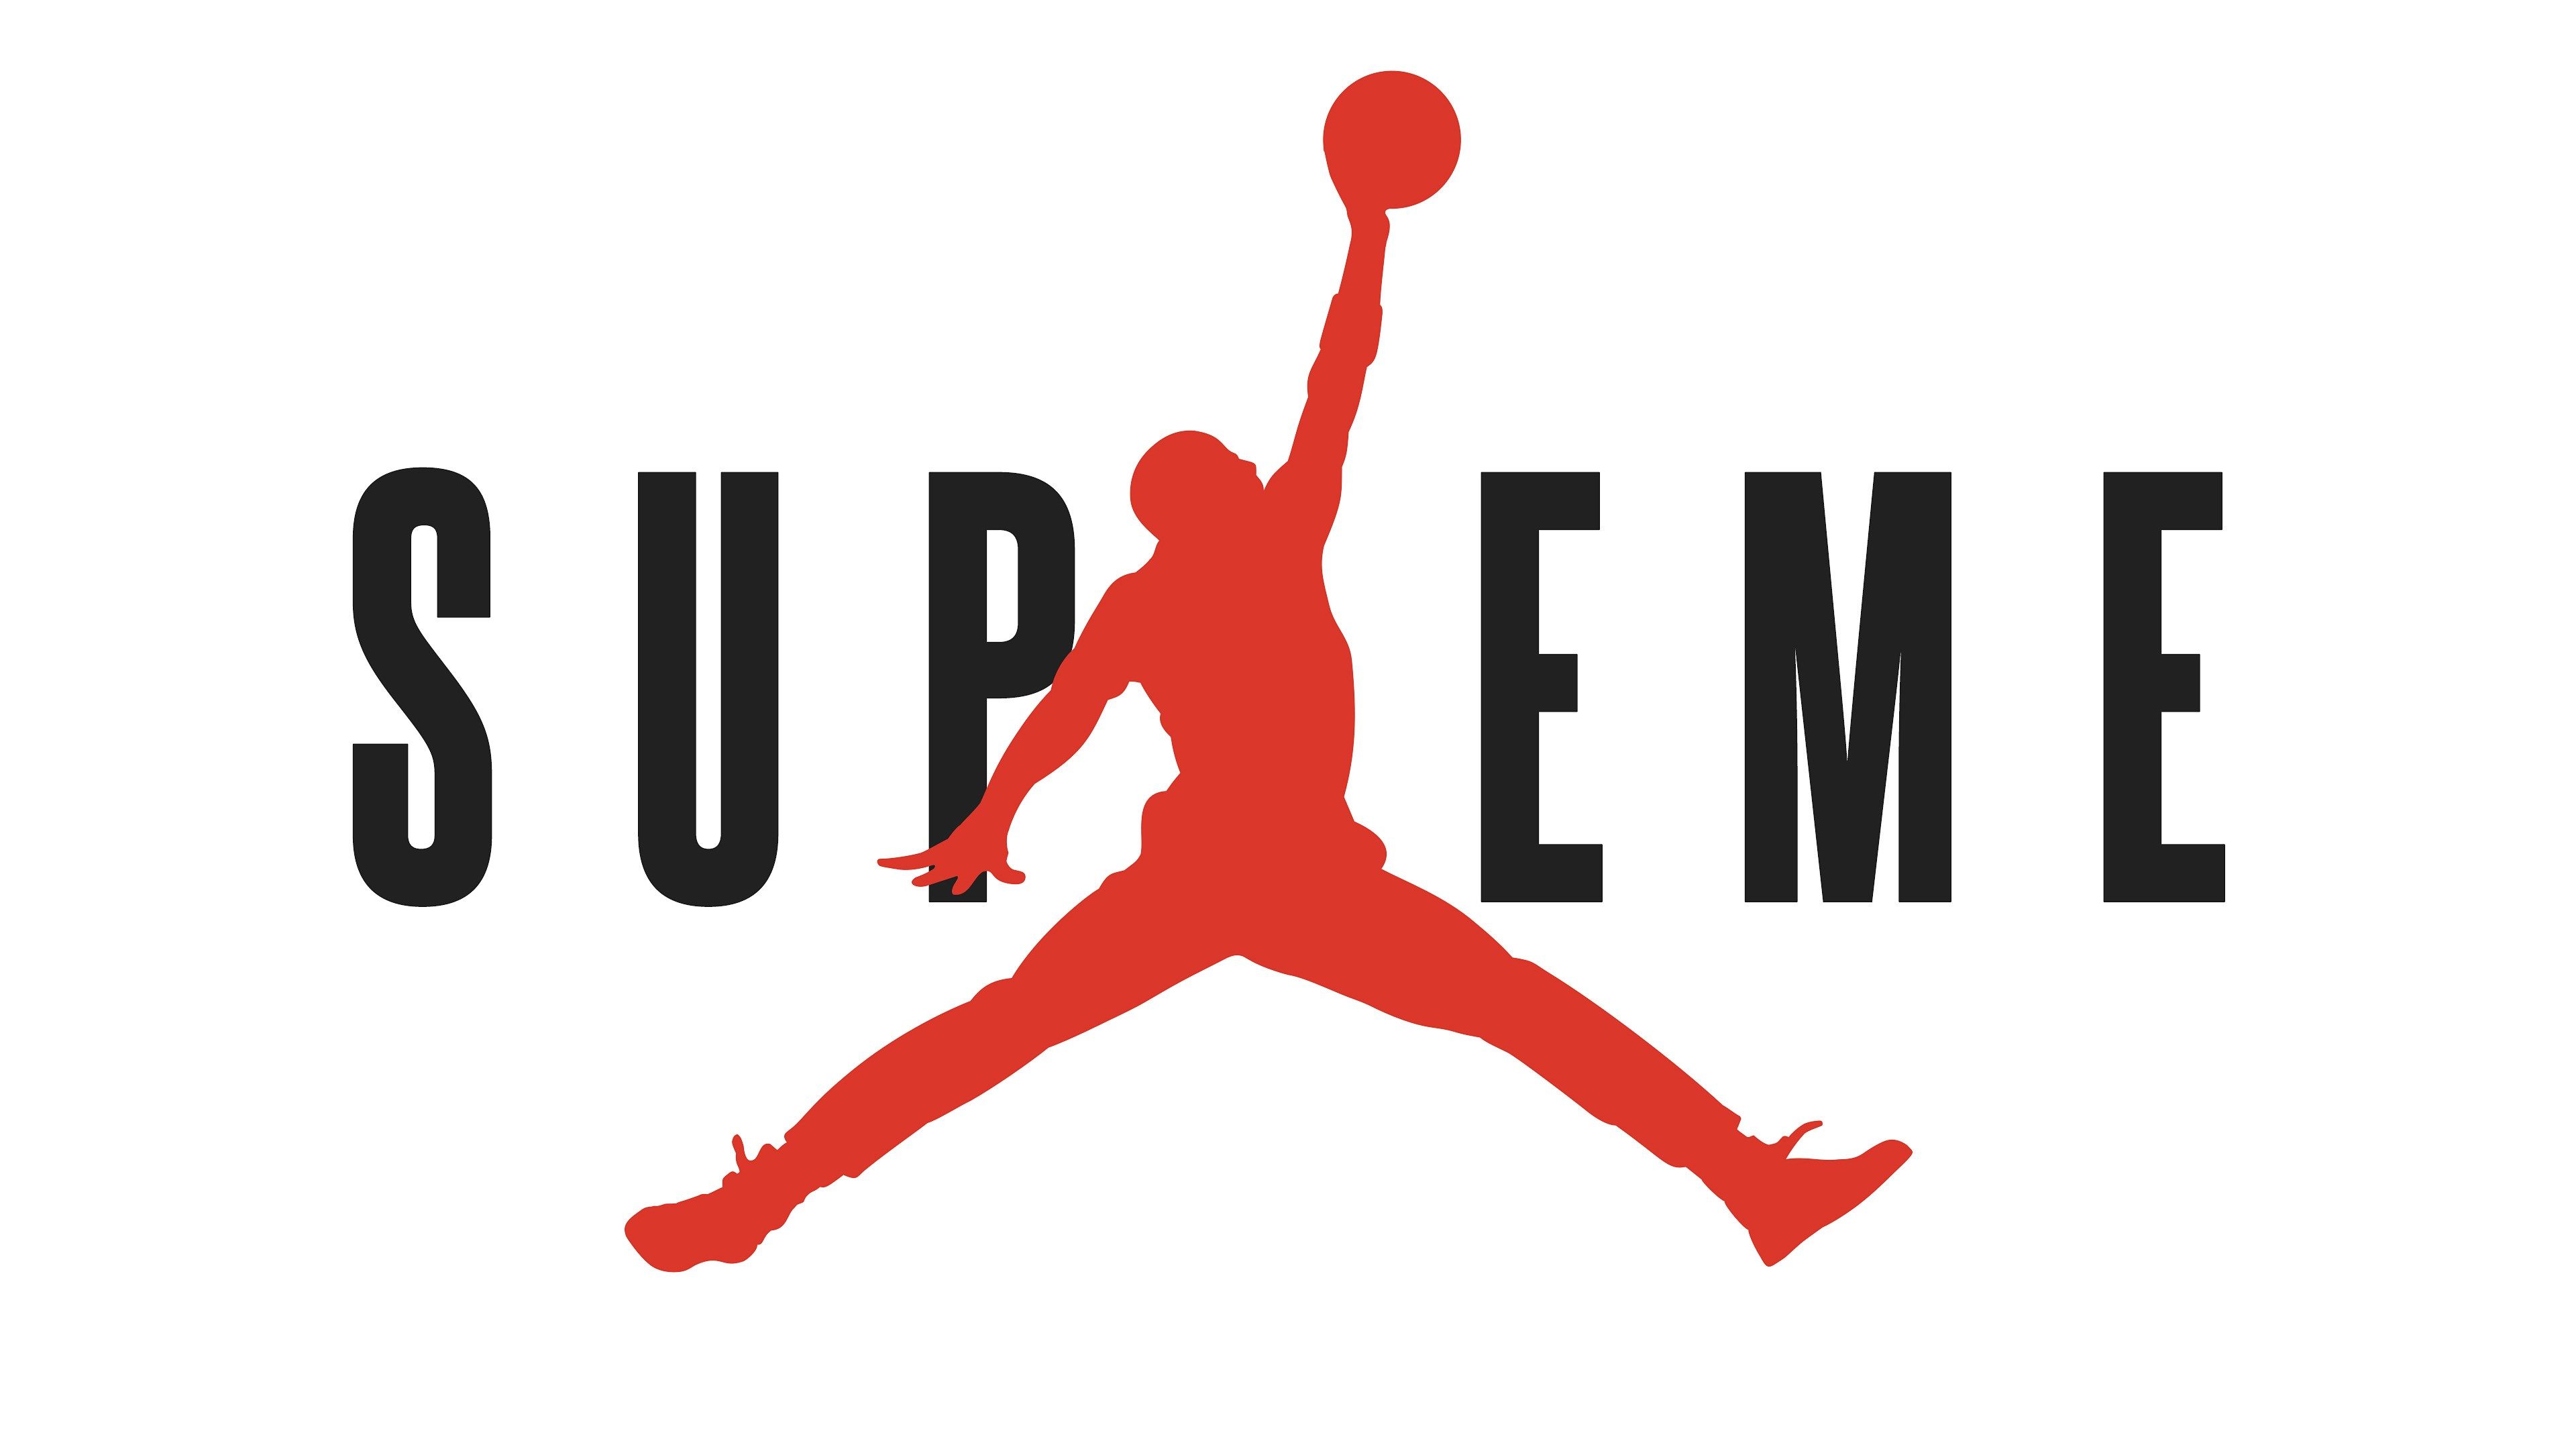 supremo logo wallpaper hd,giocatore di pallavolo,lanciare una palla,giocatore di pallacanestro,font,pallacanestro